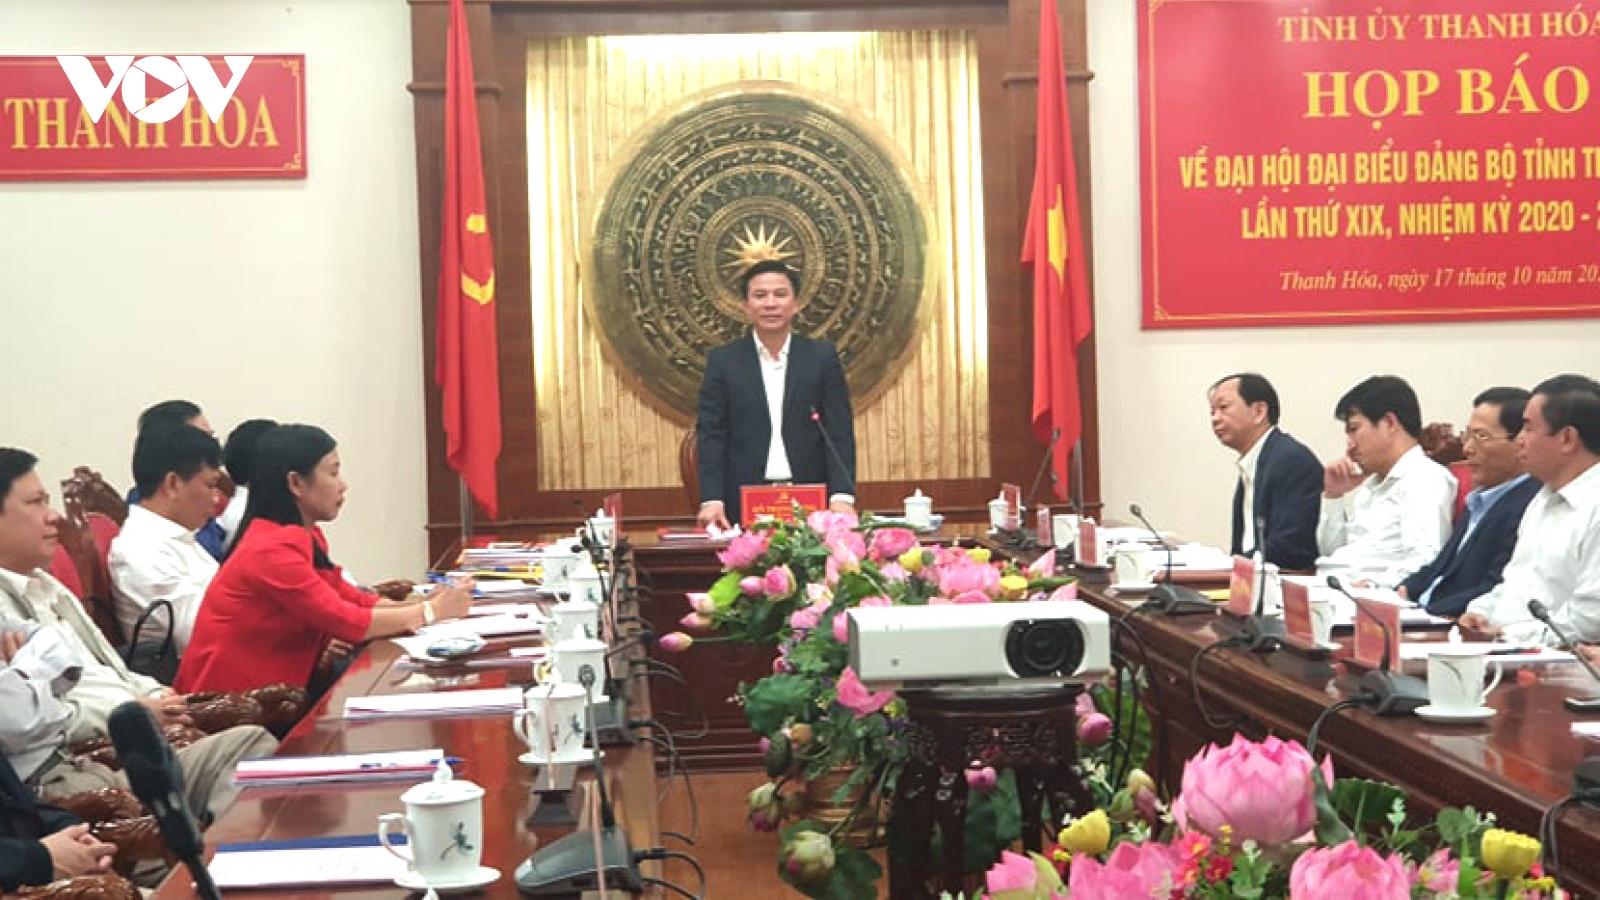 Thanh Hoá sẽ bầu Ban chấp hành nhiệm kỳ 2020-2025 gồm 65 ủy viên